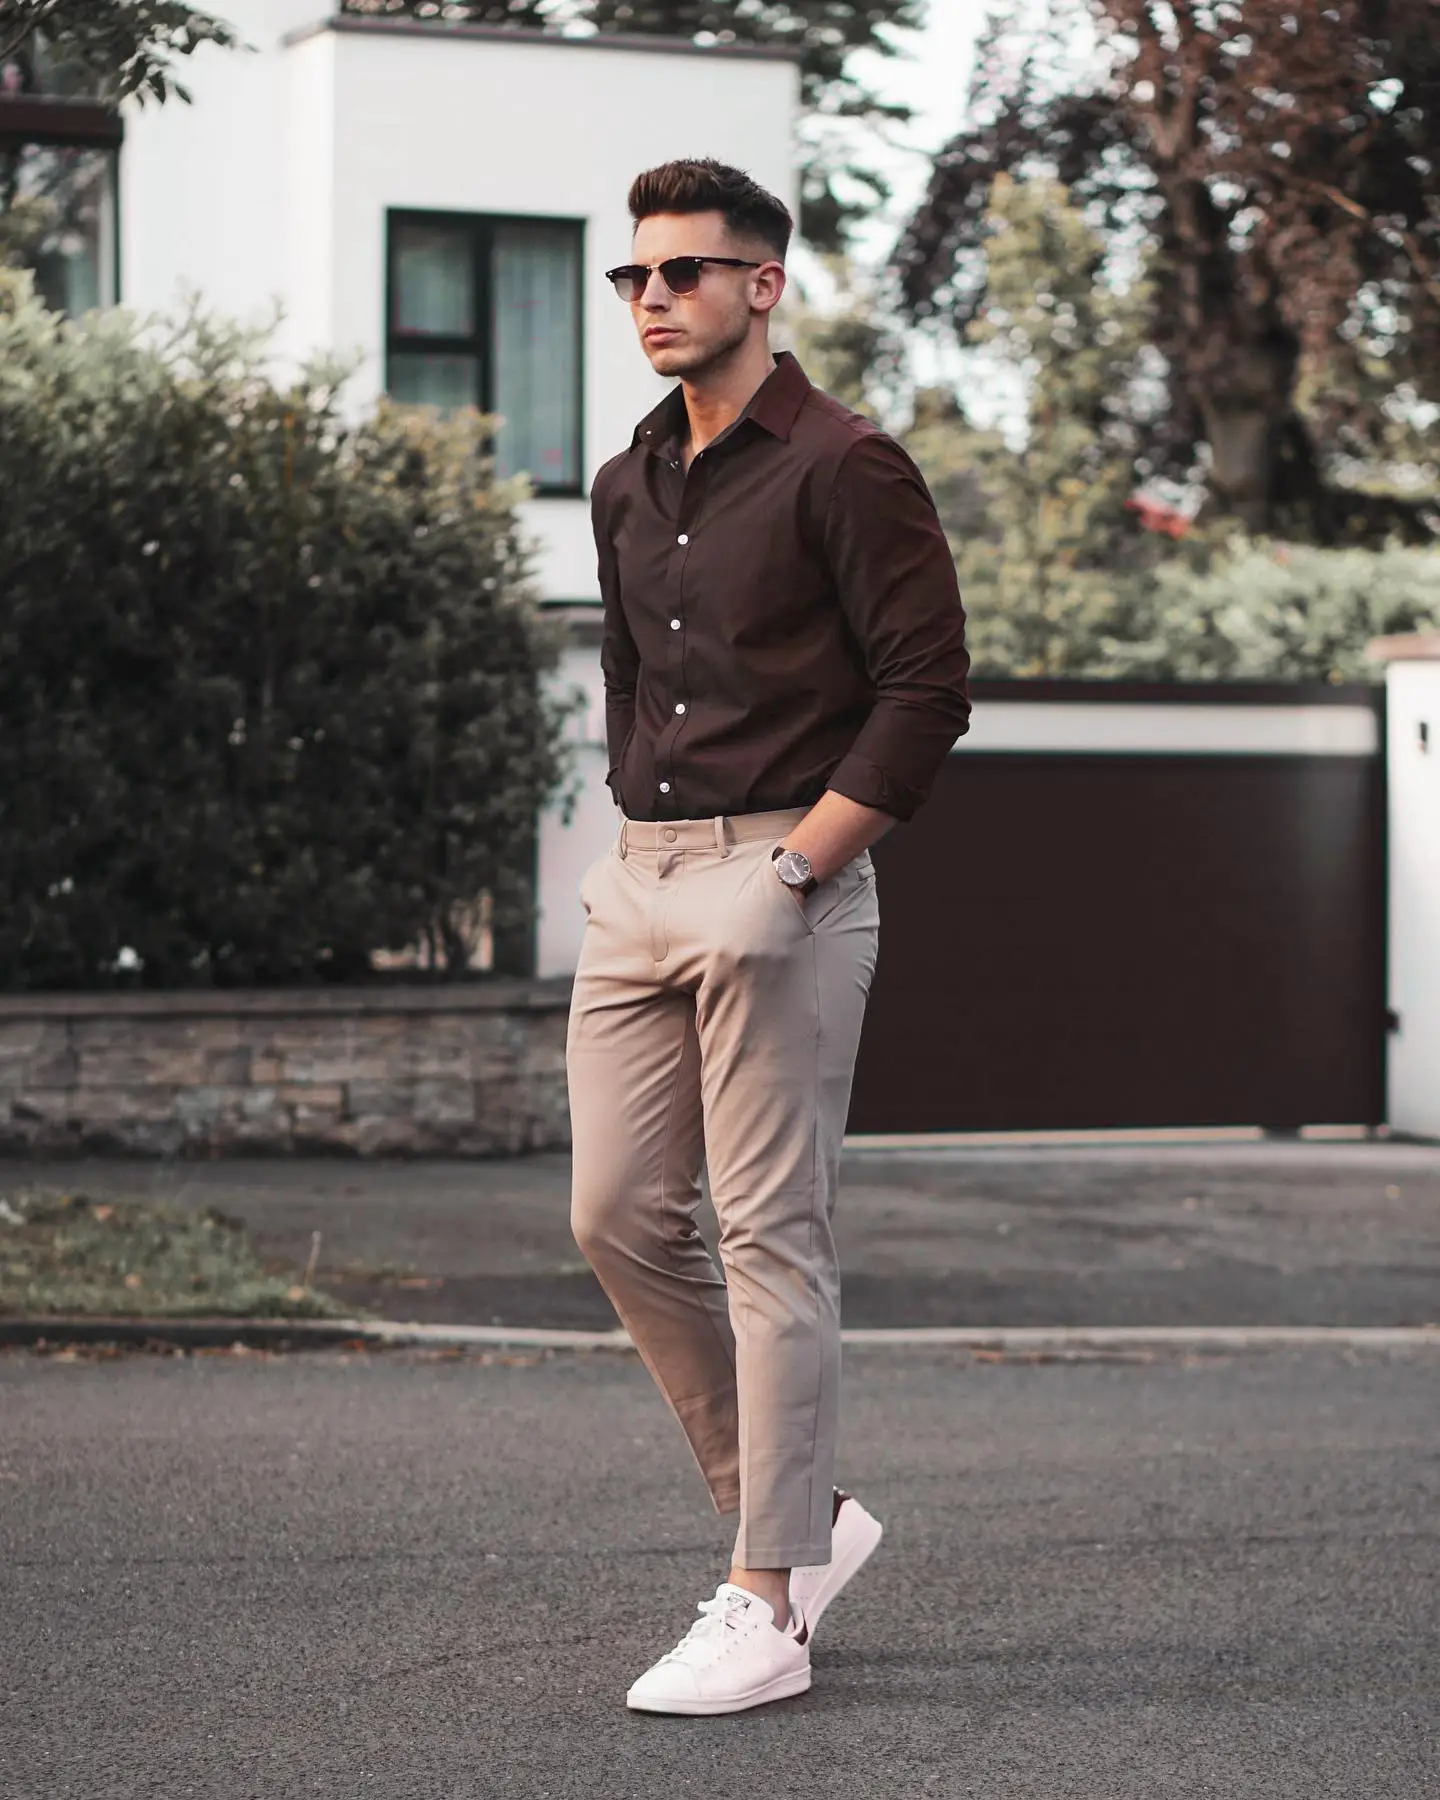 Men Elegant White Shirt Brown Trouser for Office Wear Mens - Etsy Australia